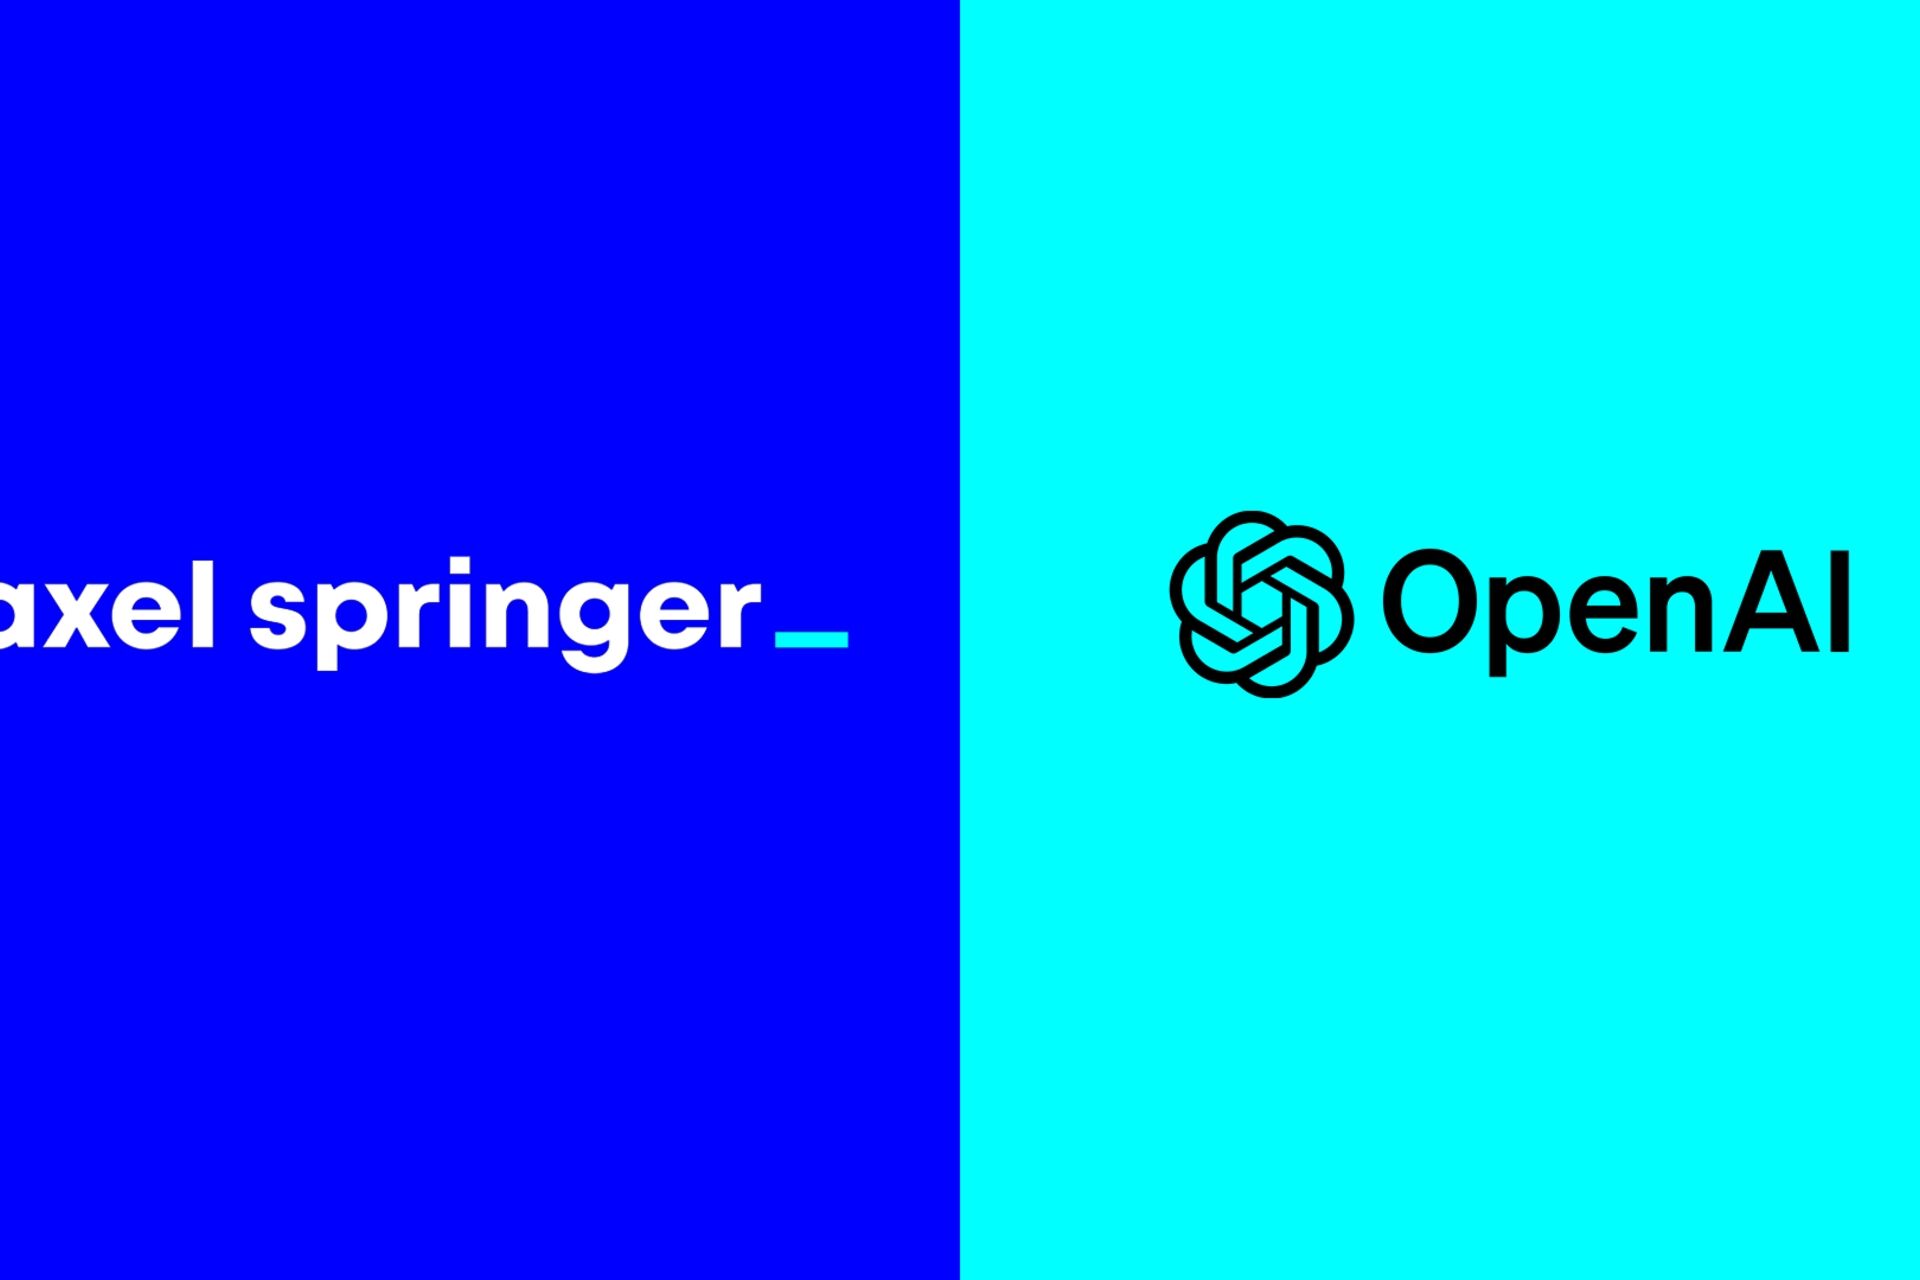 ນັກຂ່າວ: Axel Springer ແລະ OpenAI ປະກາດການຮ່ວມມືທົ່ວໂລກເພື່ອເສີມສ້າງນັກຂ່າວເອກະລາດໃນຍຸກຂອງປັນຍາປະດິດ